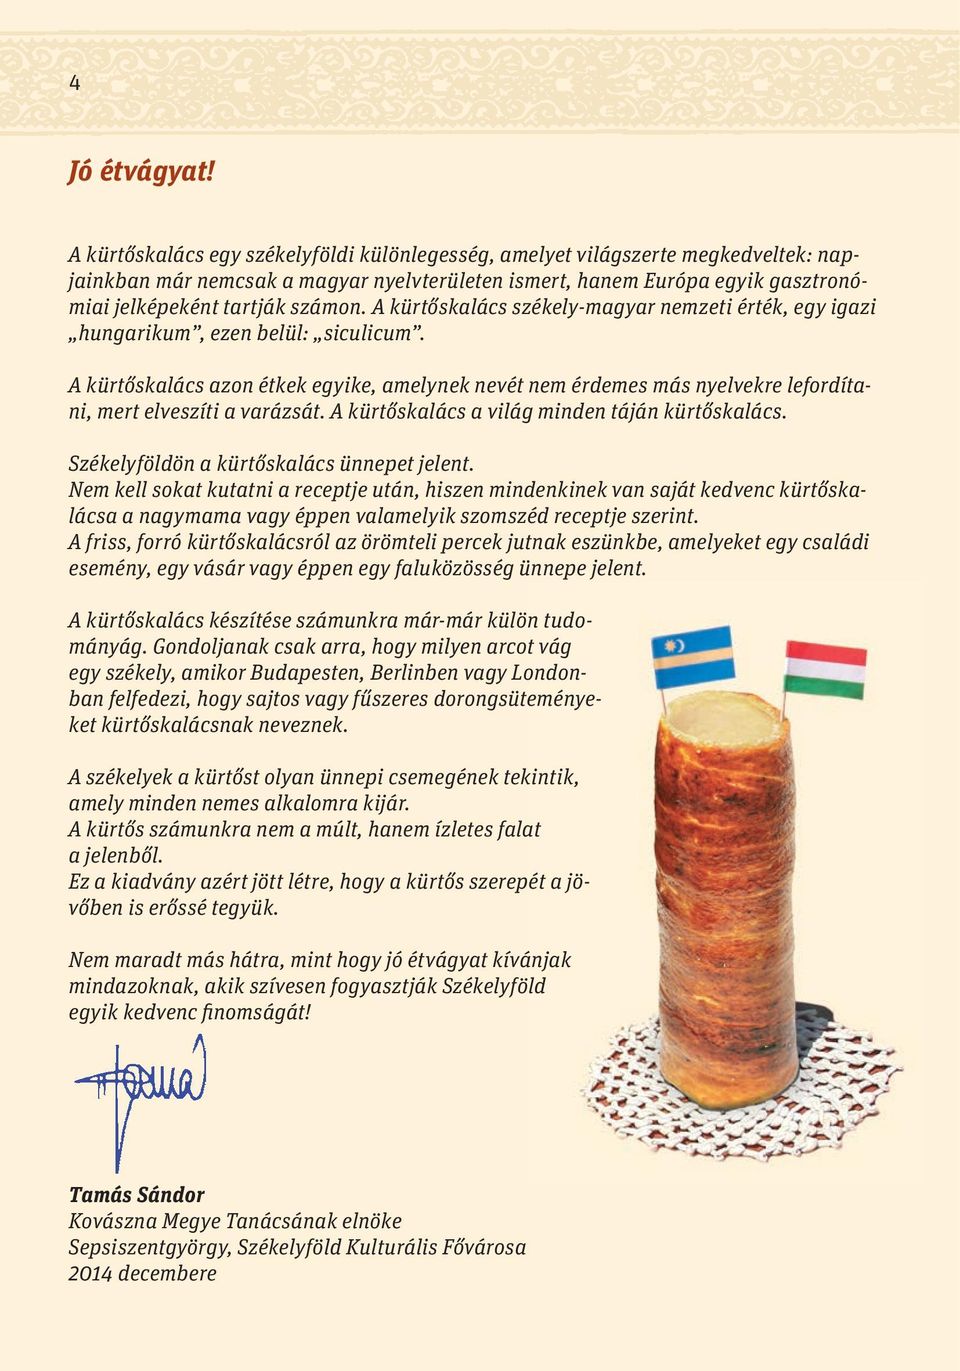 A kürtőskalács székely-magyar nemzeti érték, egy igazi hungarikum, ezen belül: siculicum.